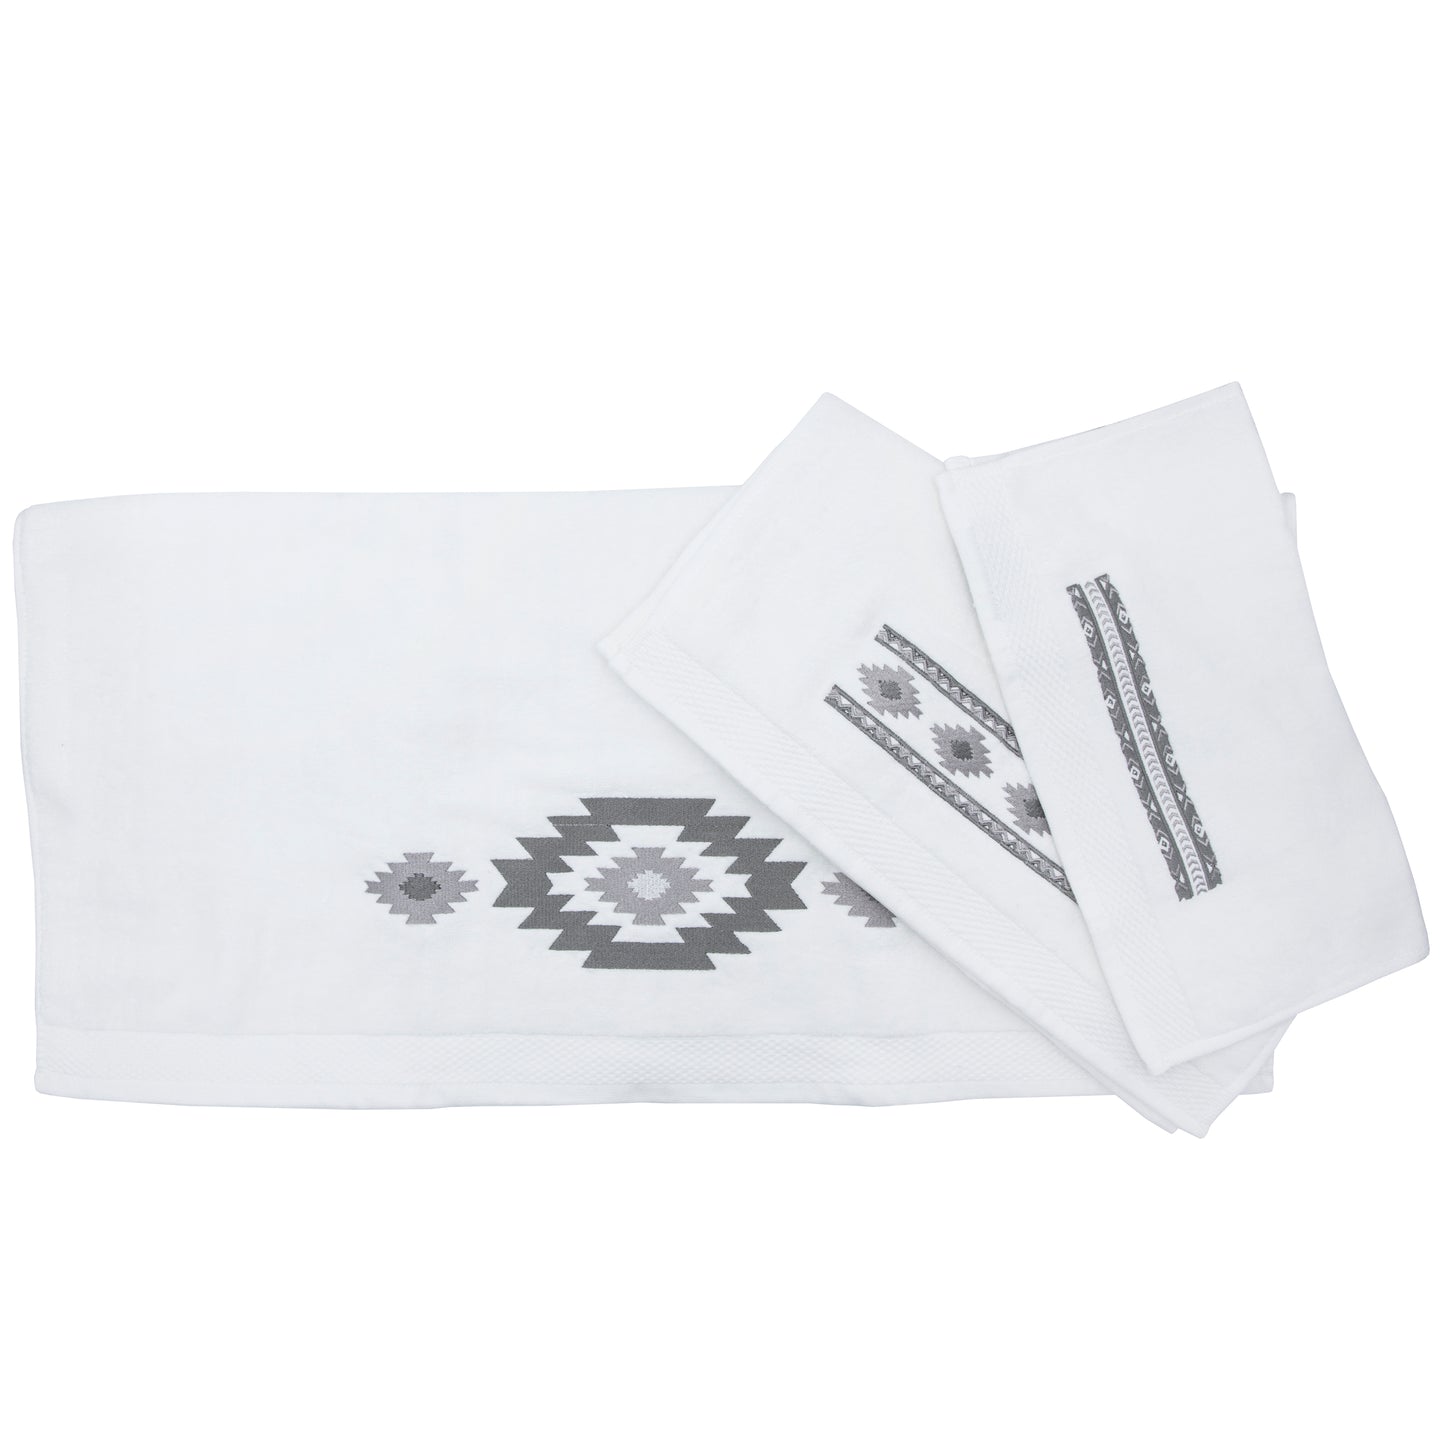 Free Spirit 3 PCS Towel Set